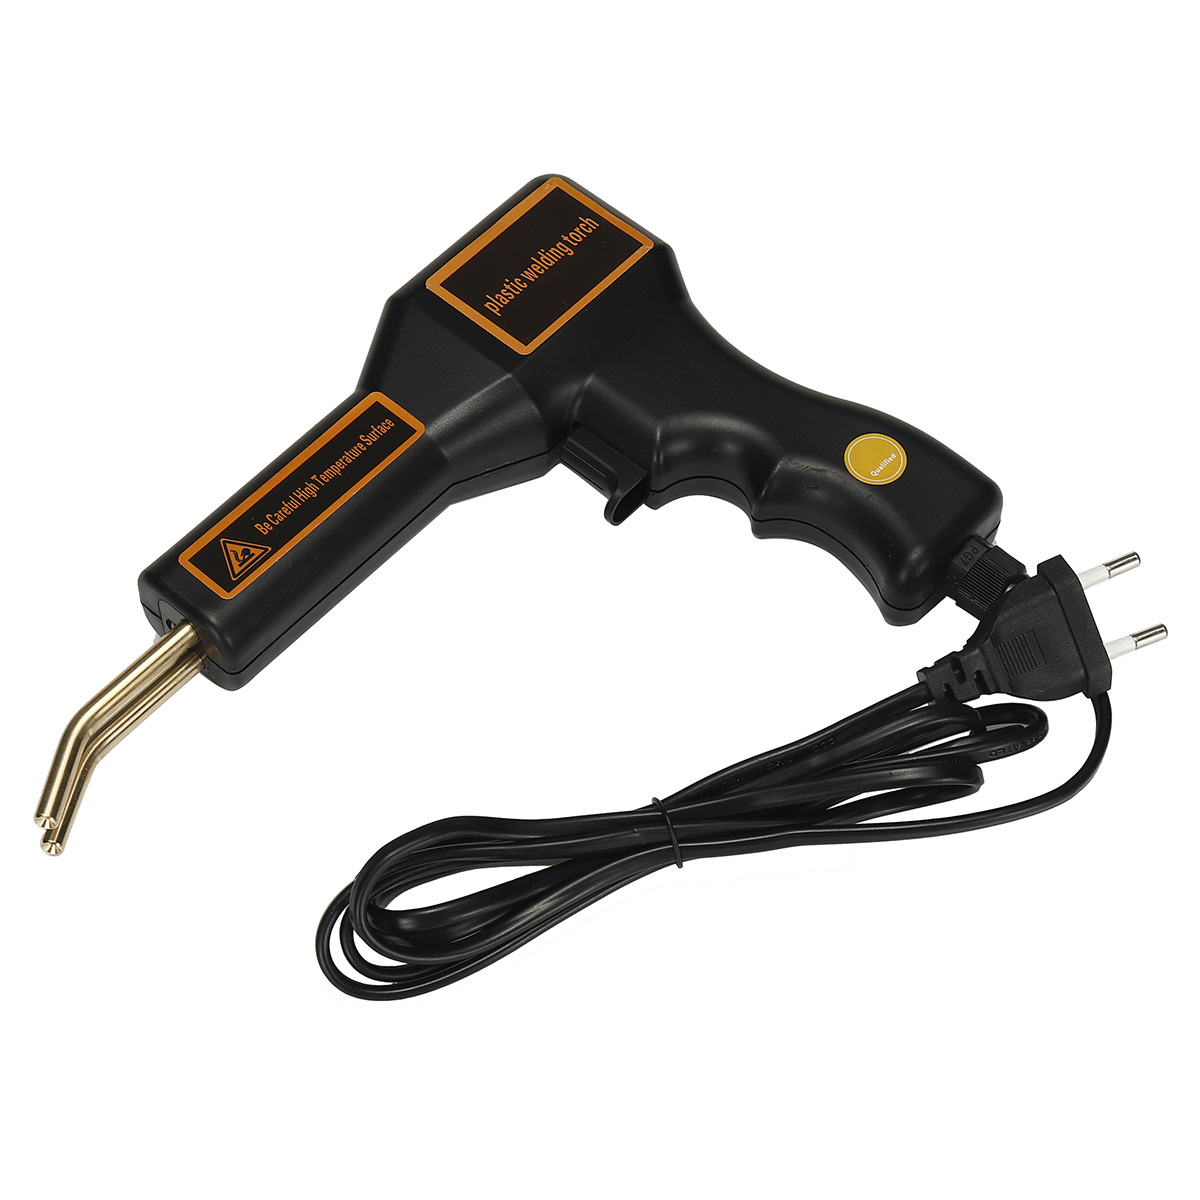 Handy-Plastics-Welder-Staple-PVC-Repairing-Machine-Hot-Stapler-Bumper-Repair-EUUS-Plug-1832317-2